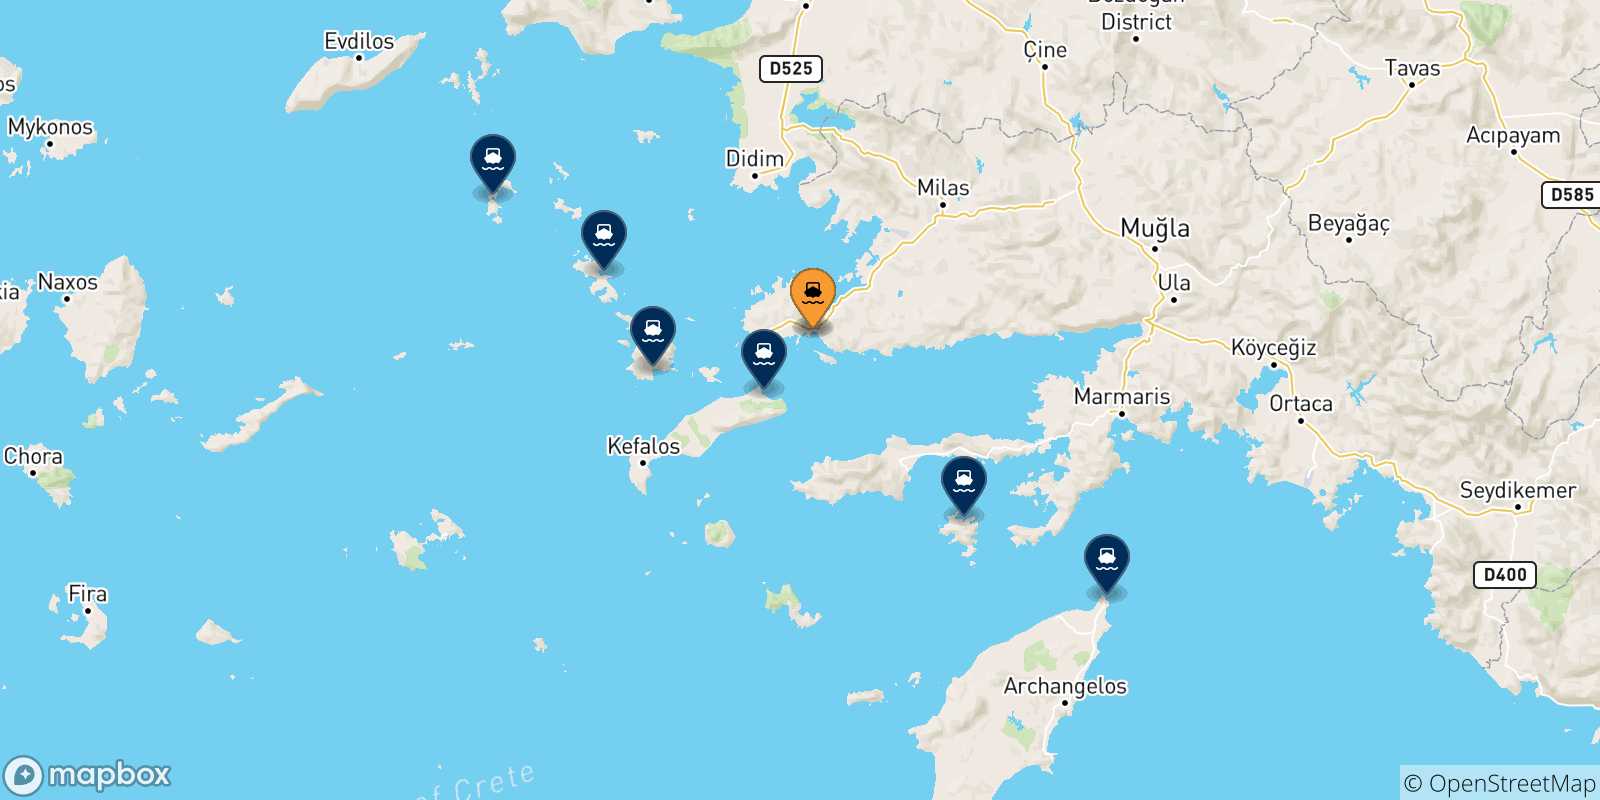 Mappa delle possibili rotte tra la Turchia e le Isole Dodecaneso